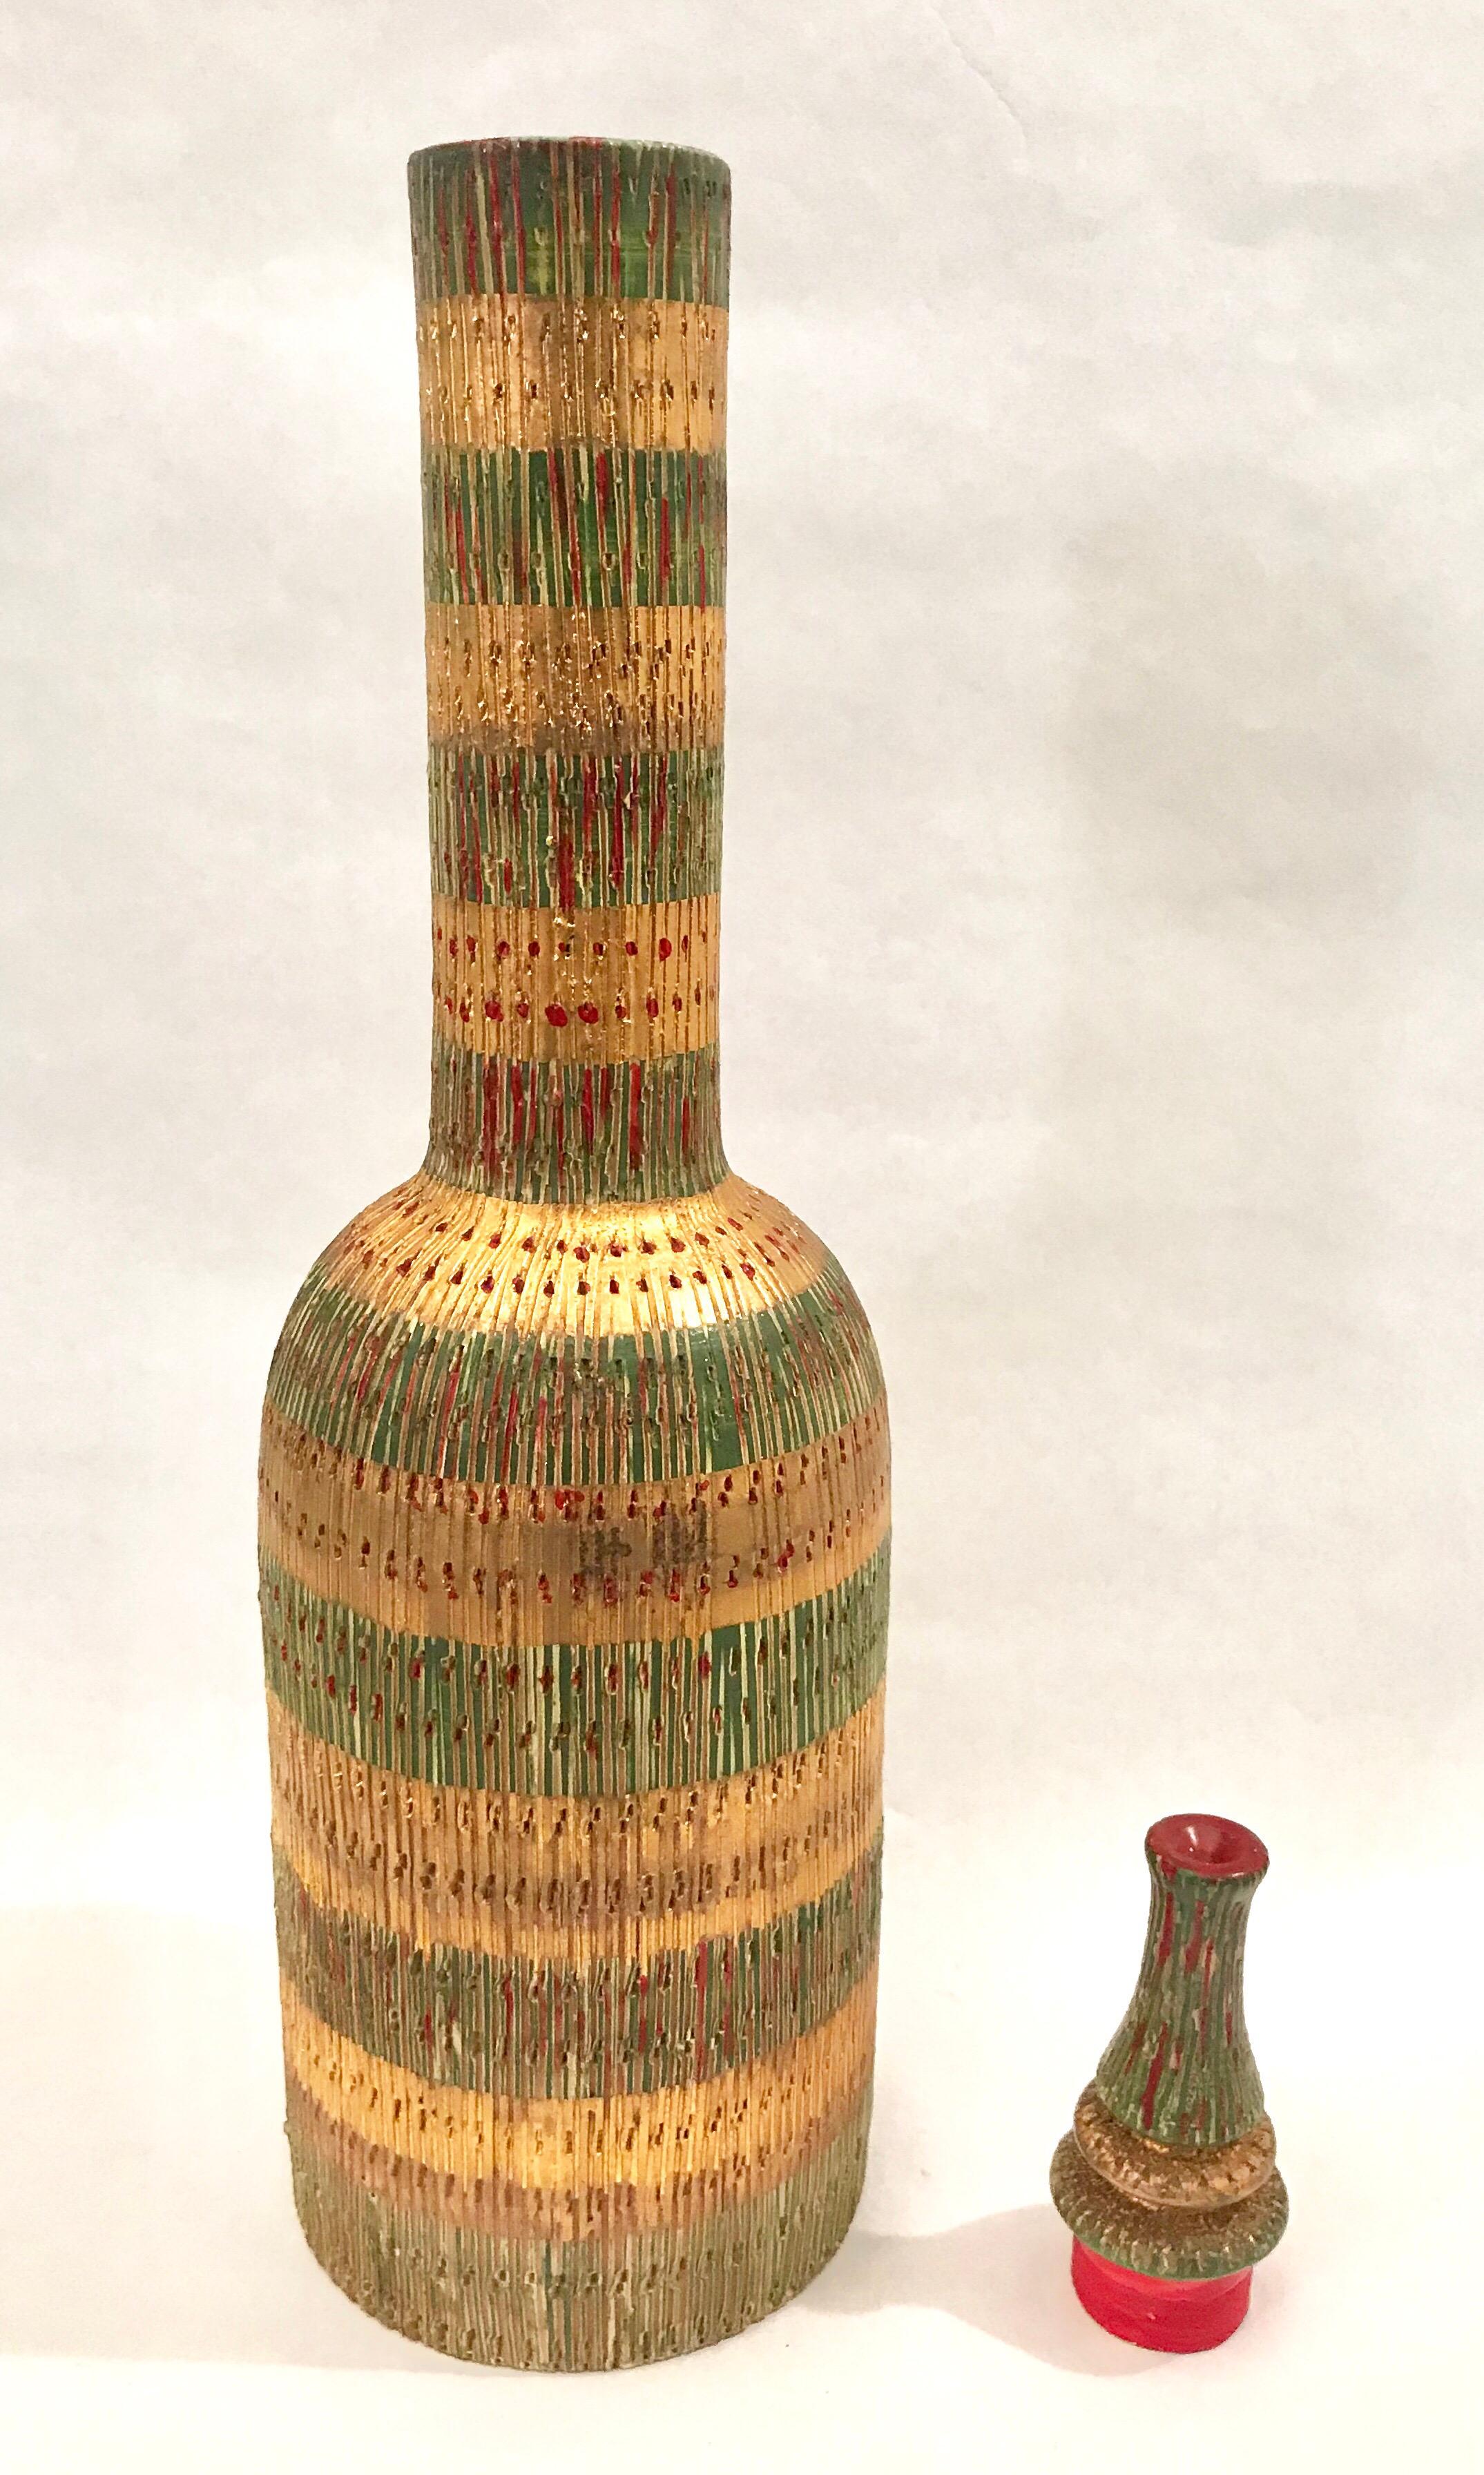 Aldo Londi for Bitossi Art Pottery Bottle Decanter For Sale 2